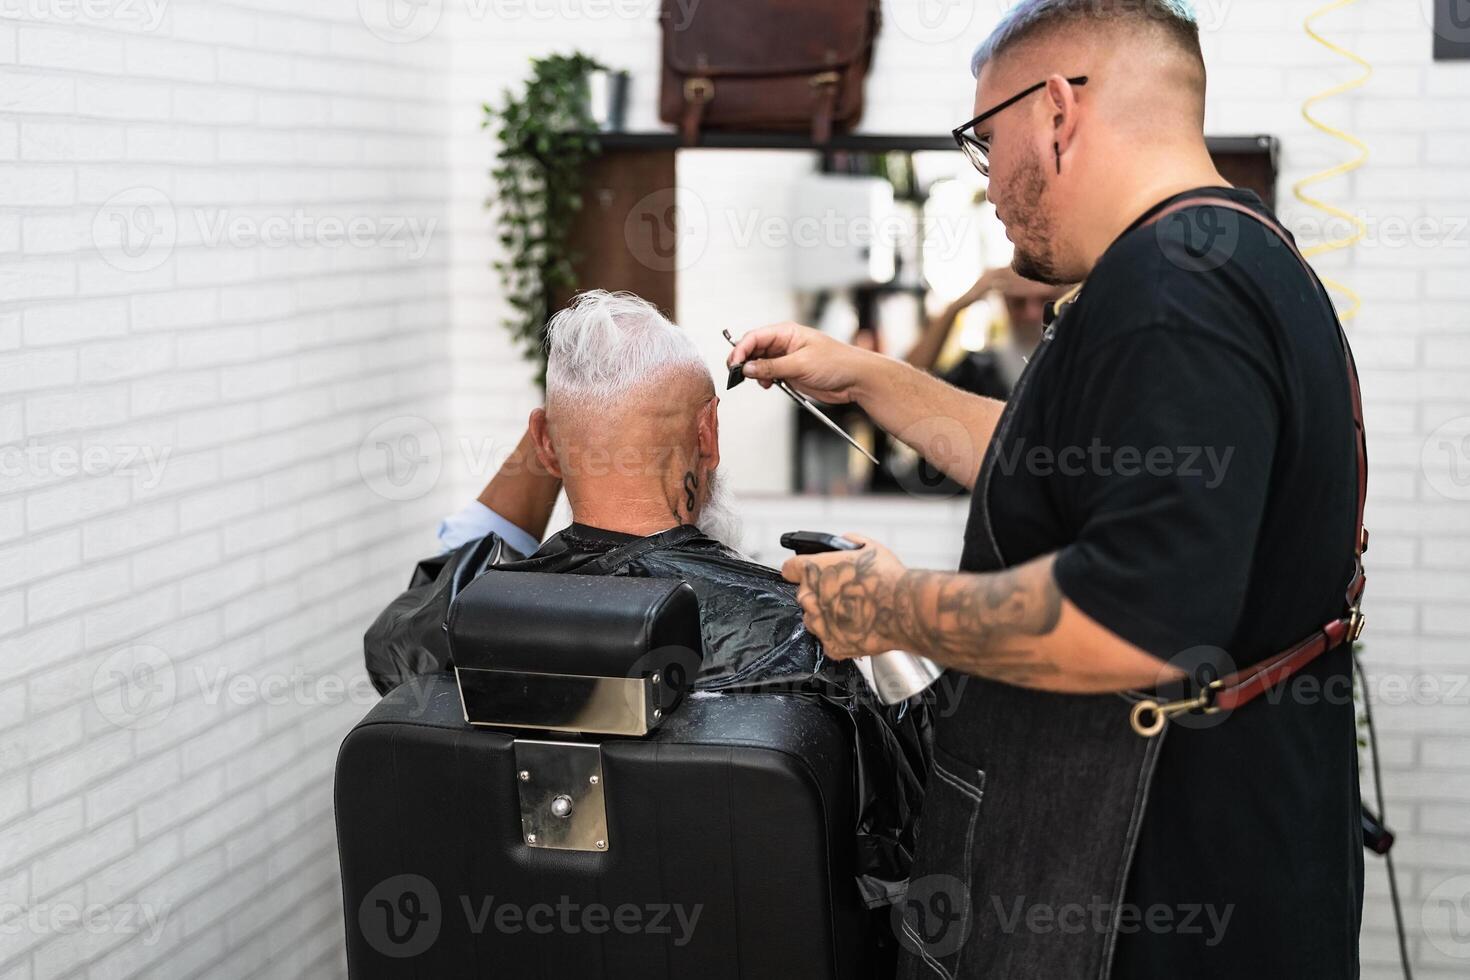 maschio parrucchiere taglio capelli per barba anziano cliente - giovane parrucchiere Lavorando nel barbiere - Salute cura e taglio di capelli salone concetto foto